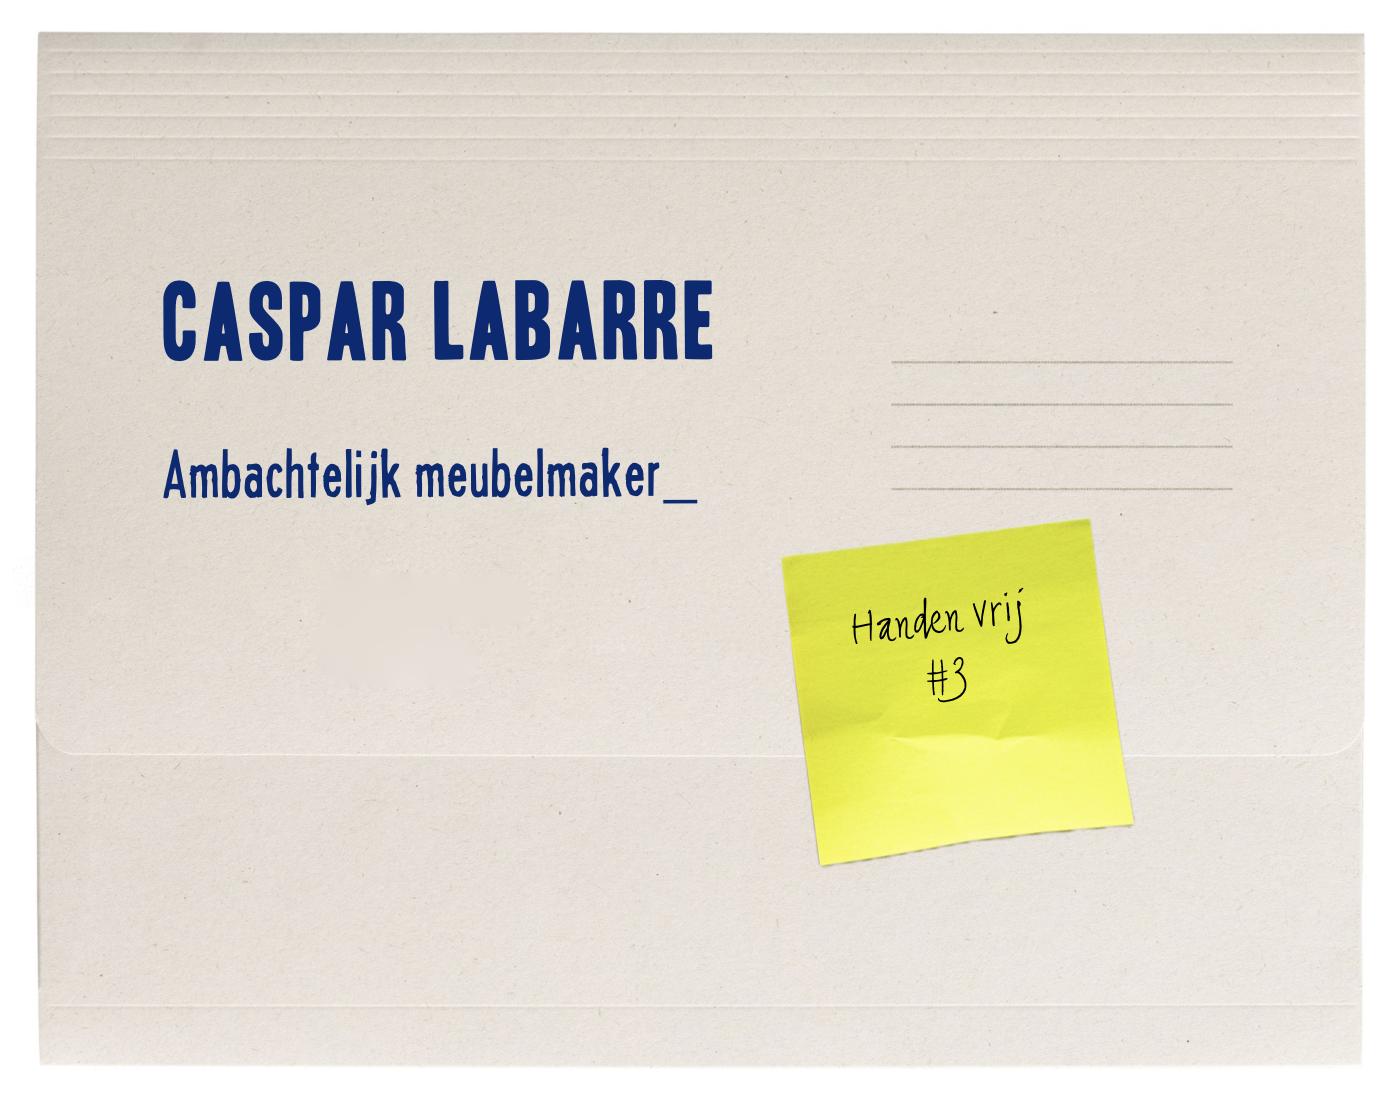 Handen vrij – Caspar Labarre, ambachtelijk meubelmaker